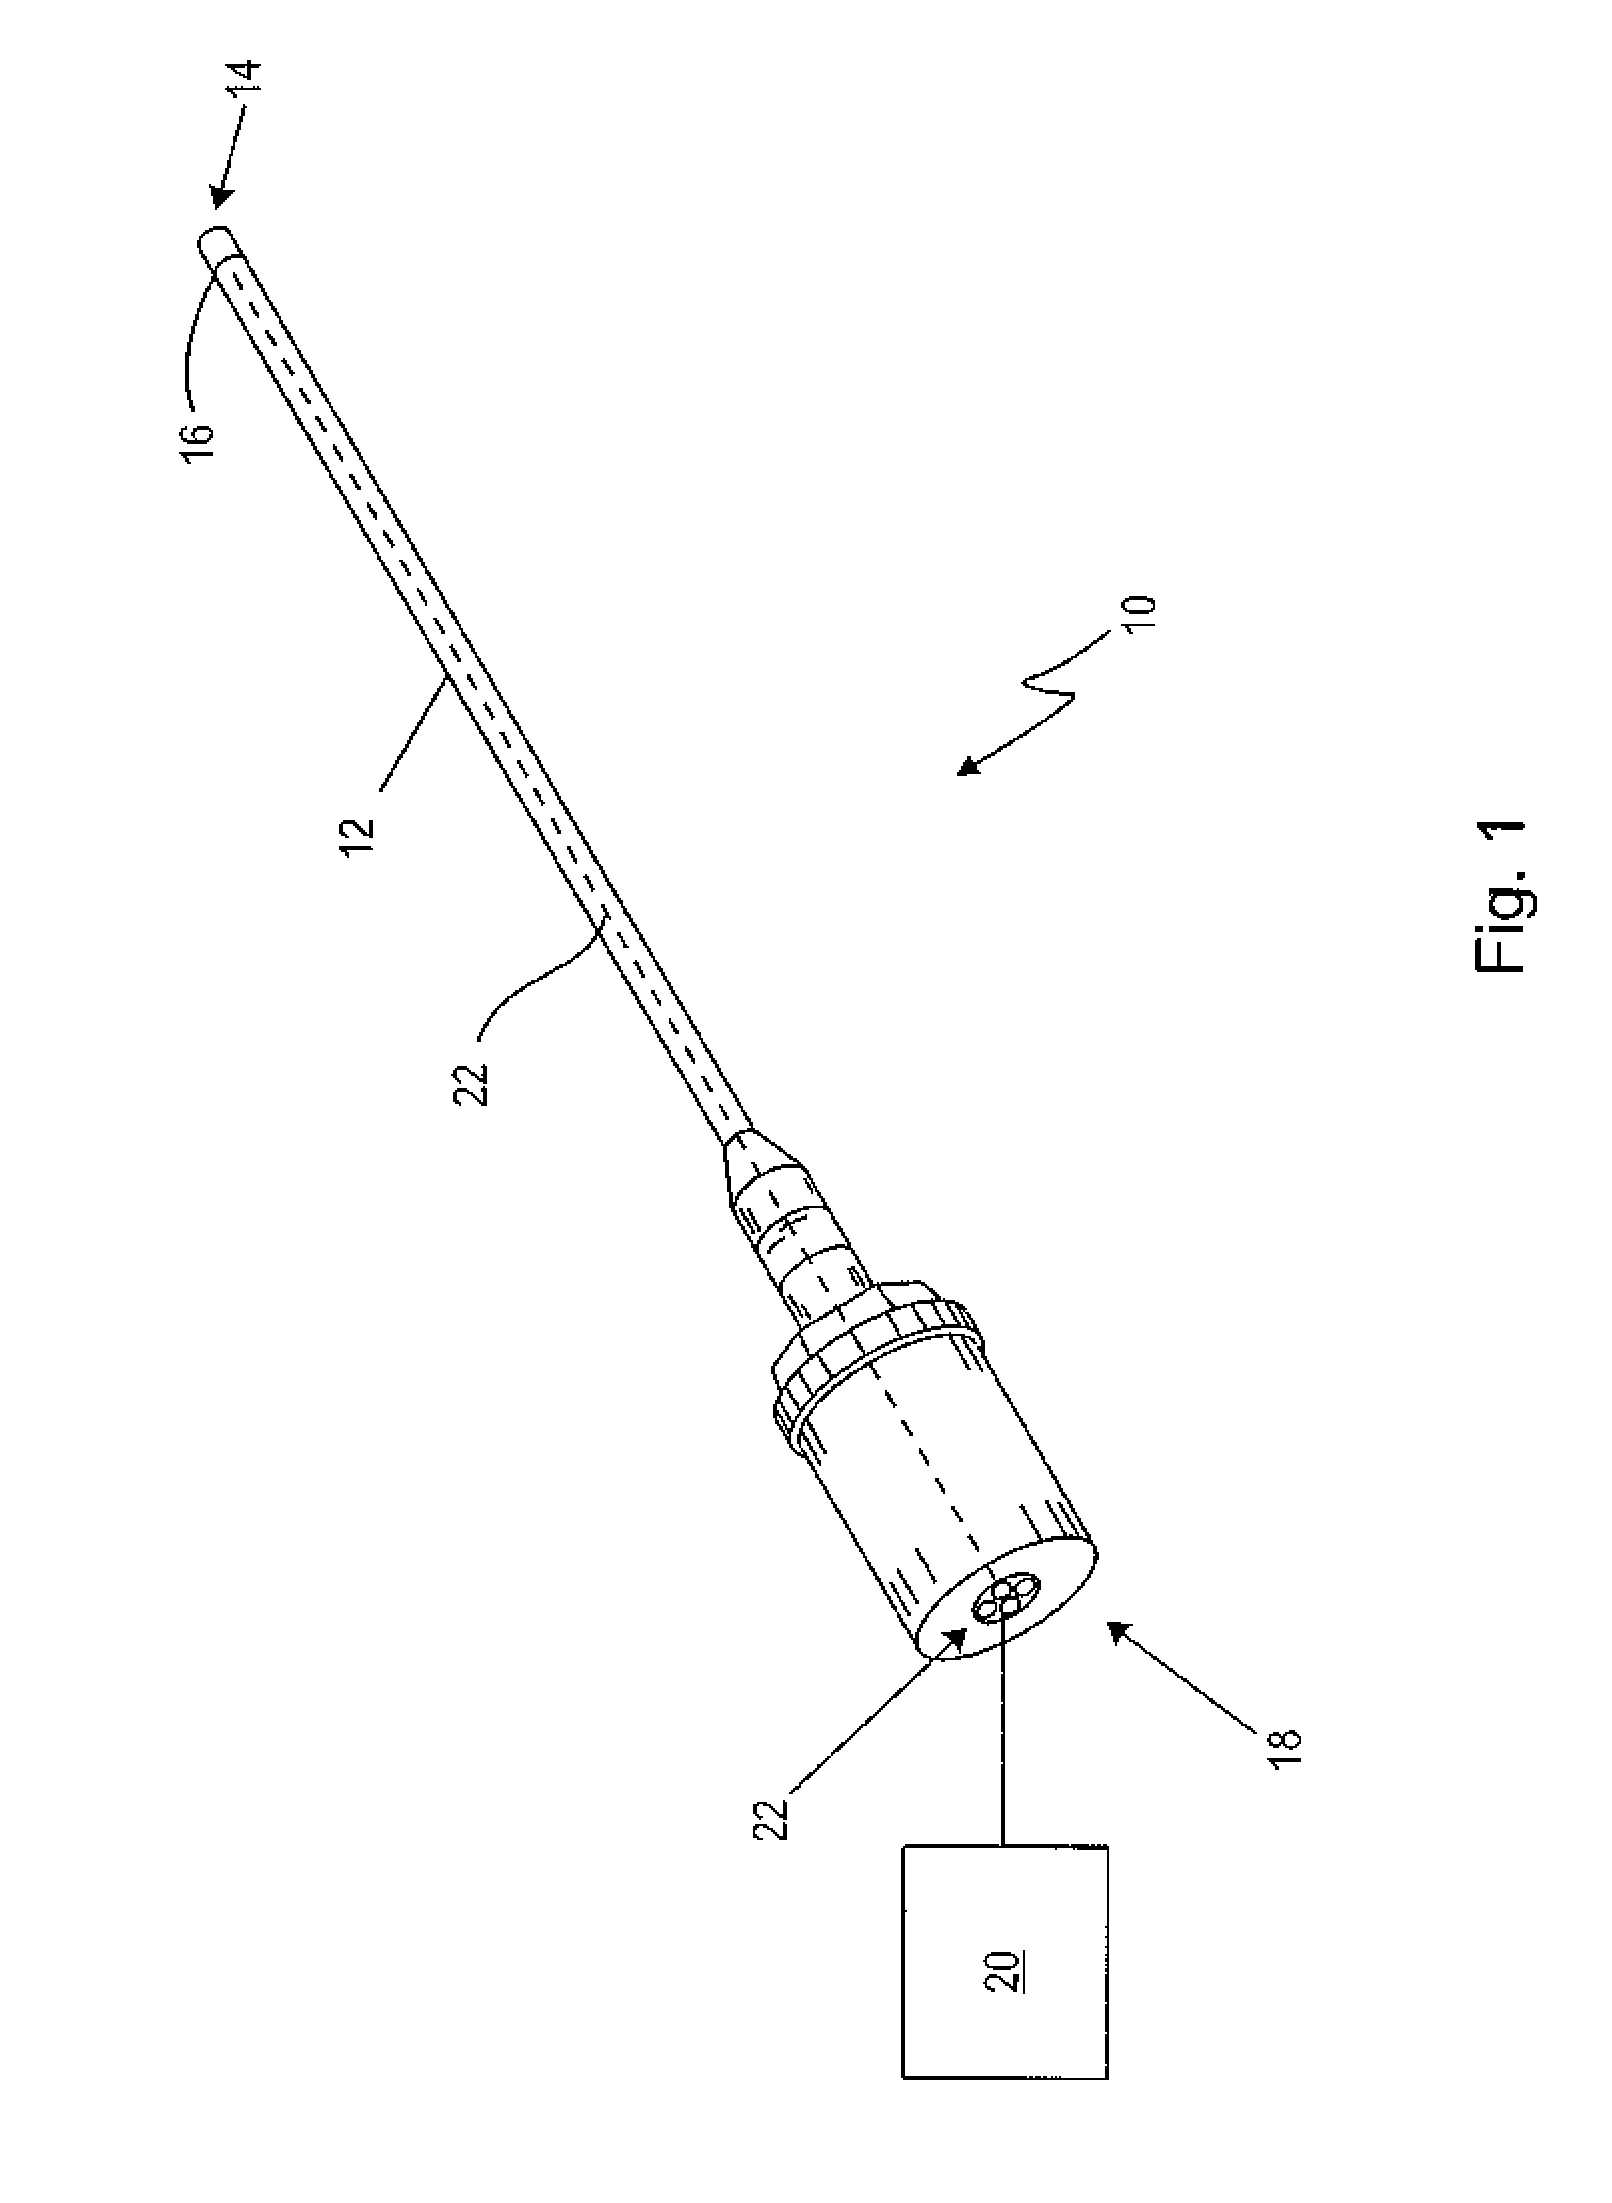 Endoscopic Instrument